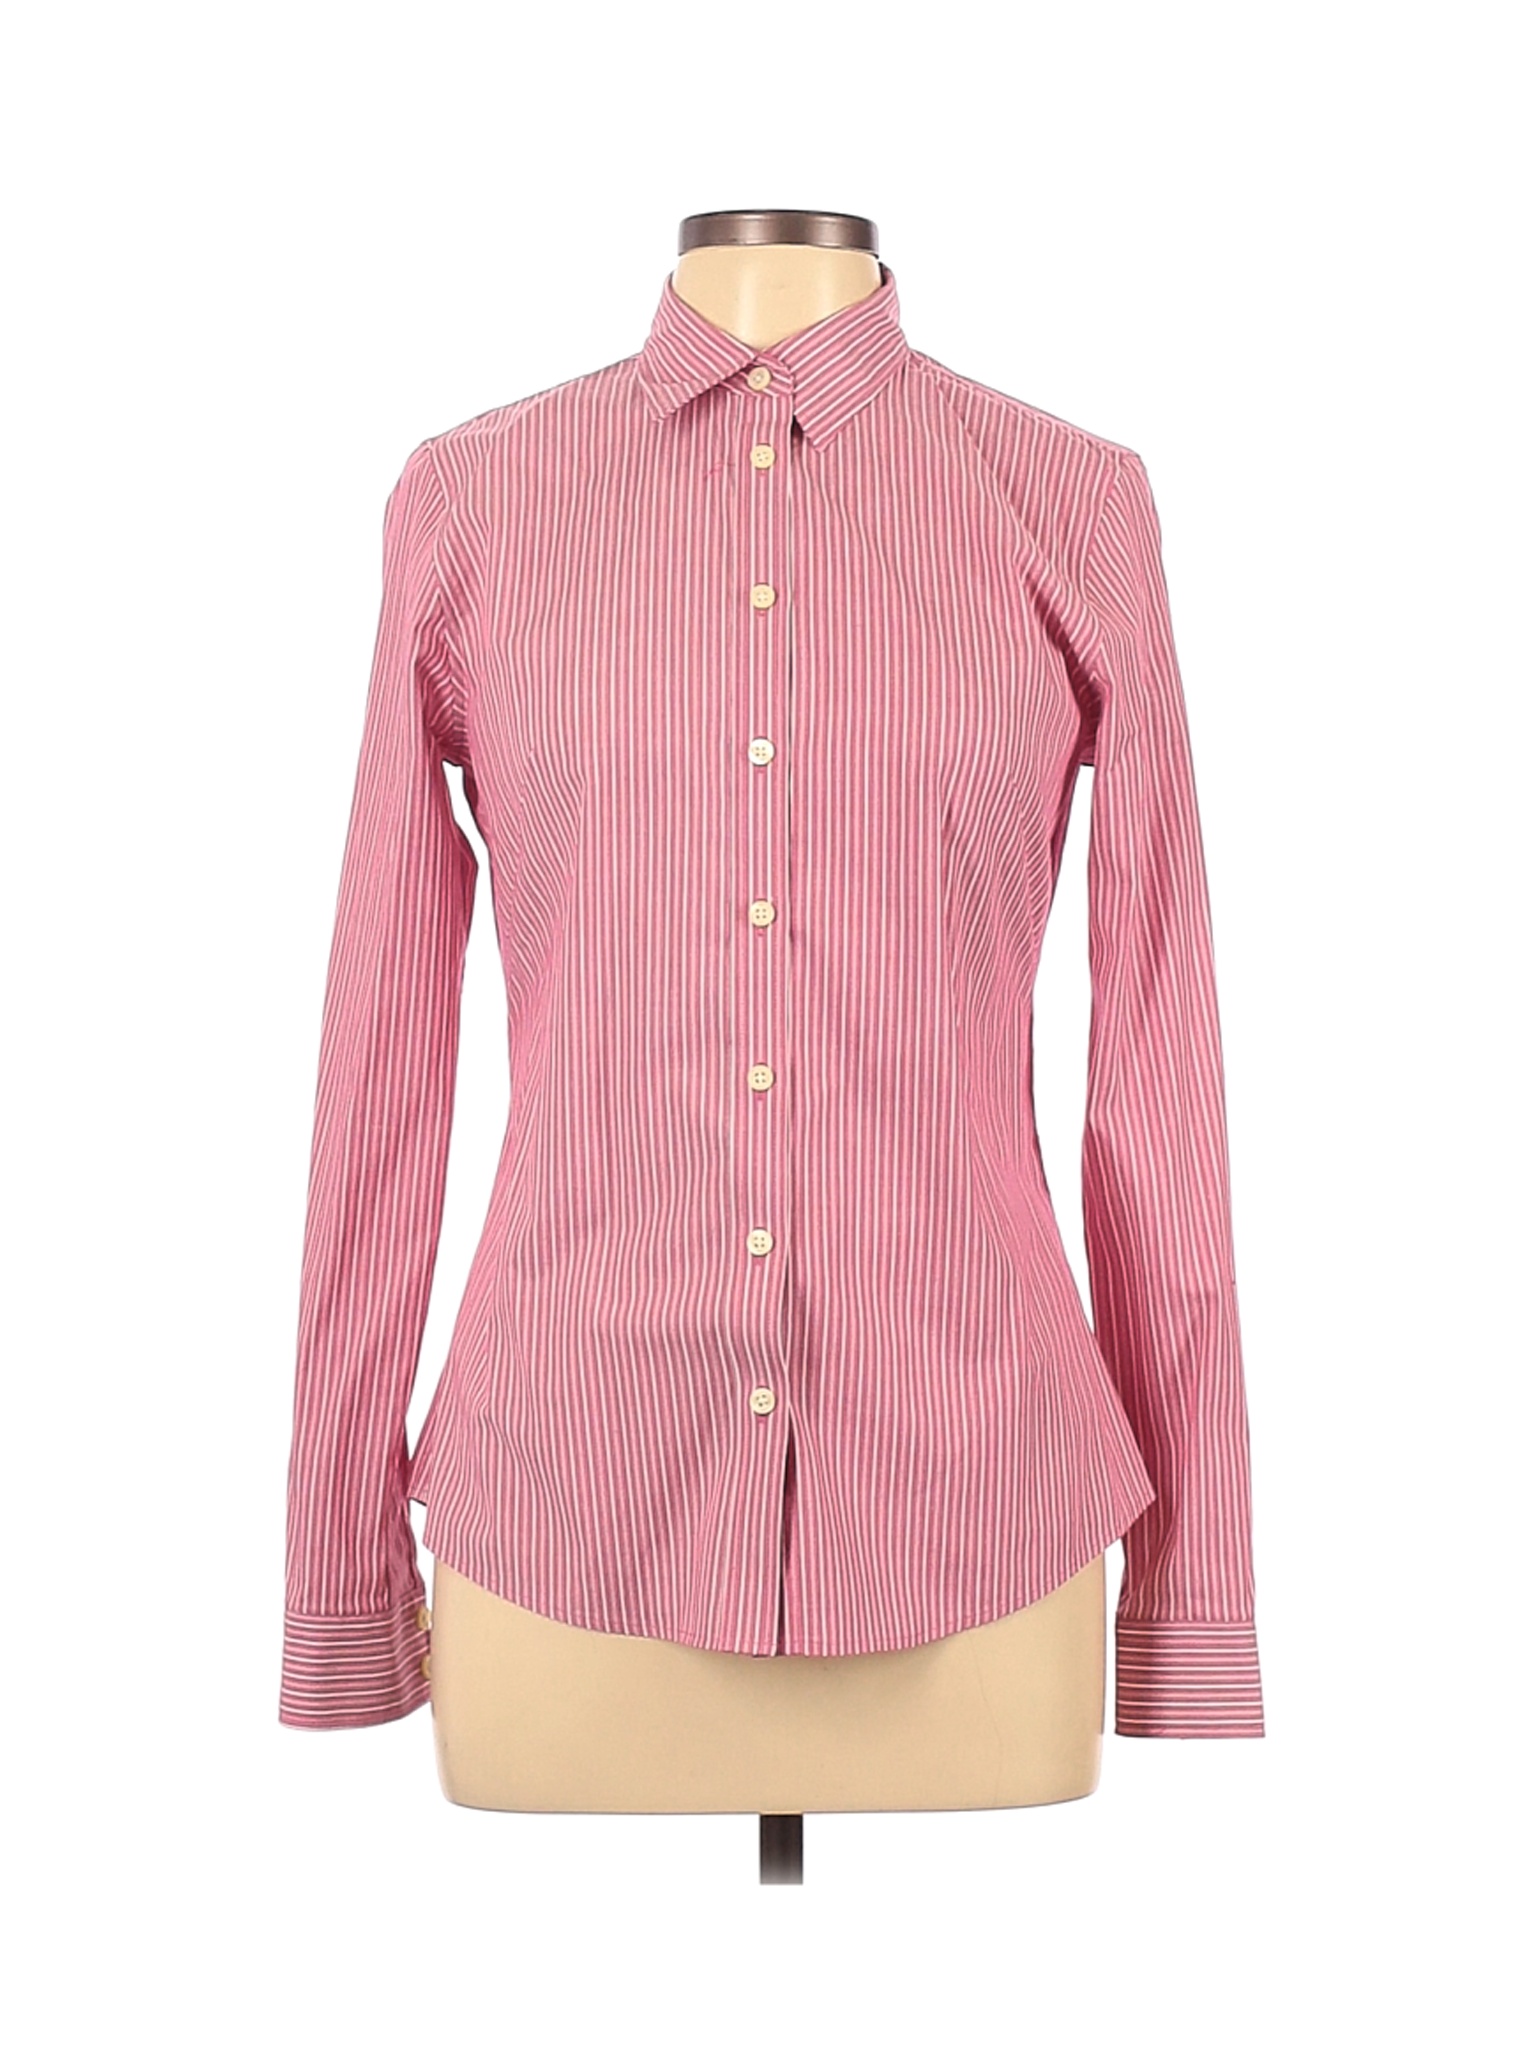 Banana Republic Women Pink Long Sleeve Button-Down Shirt 10 | eBay